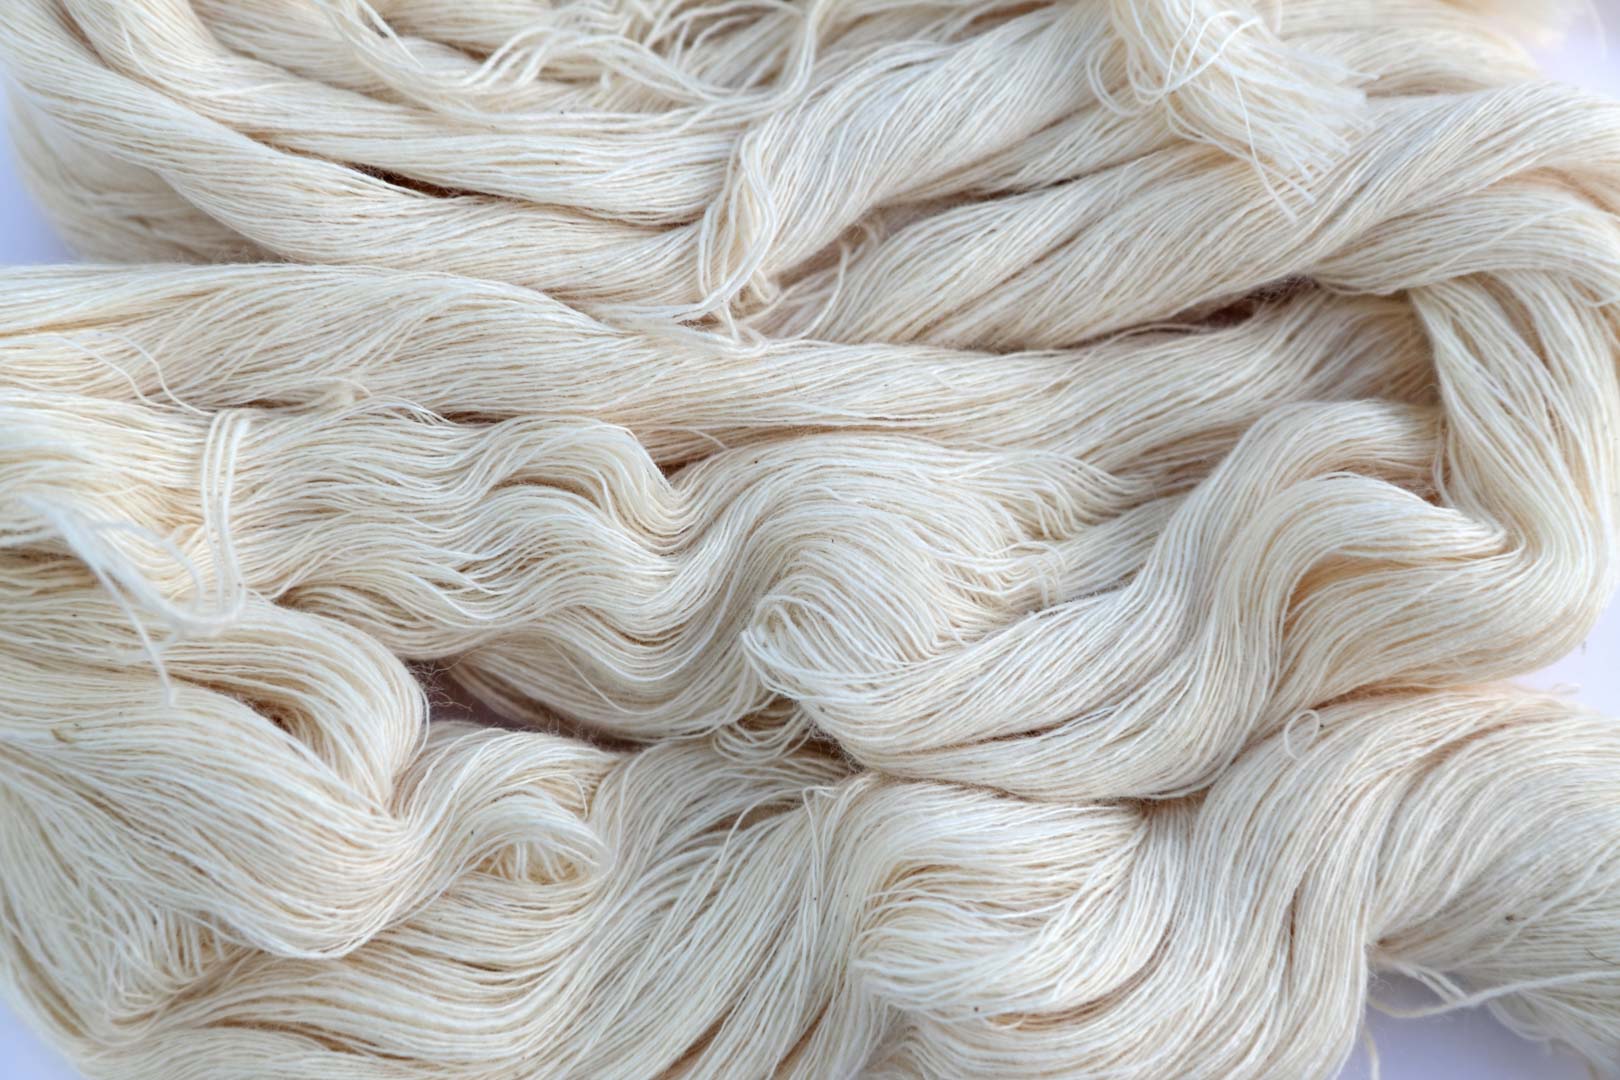 White cotton thread